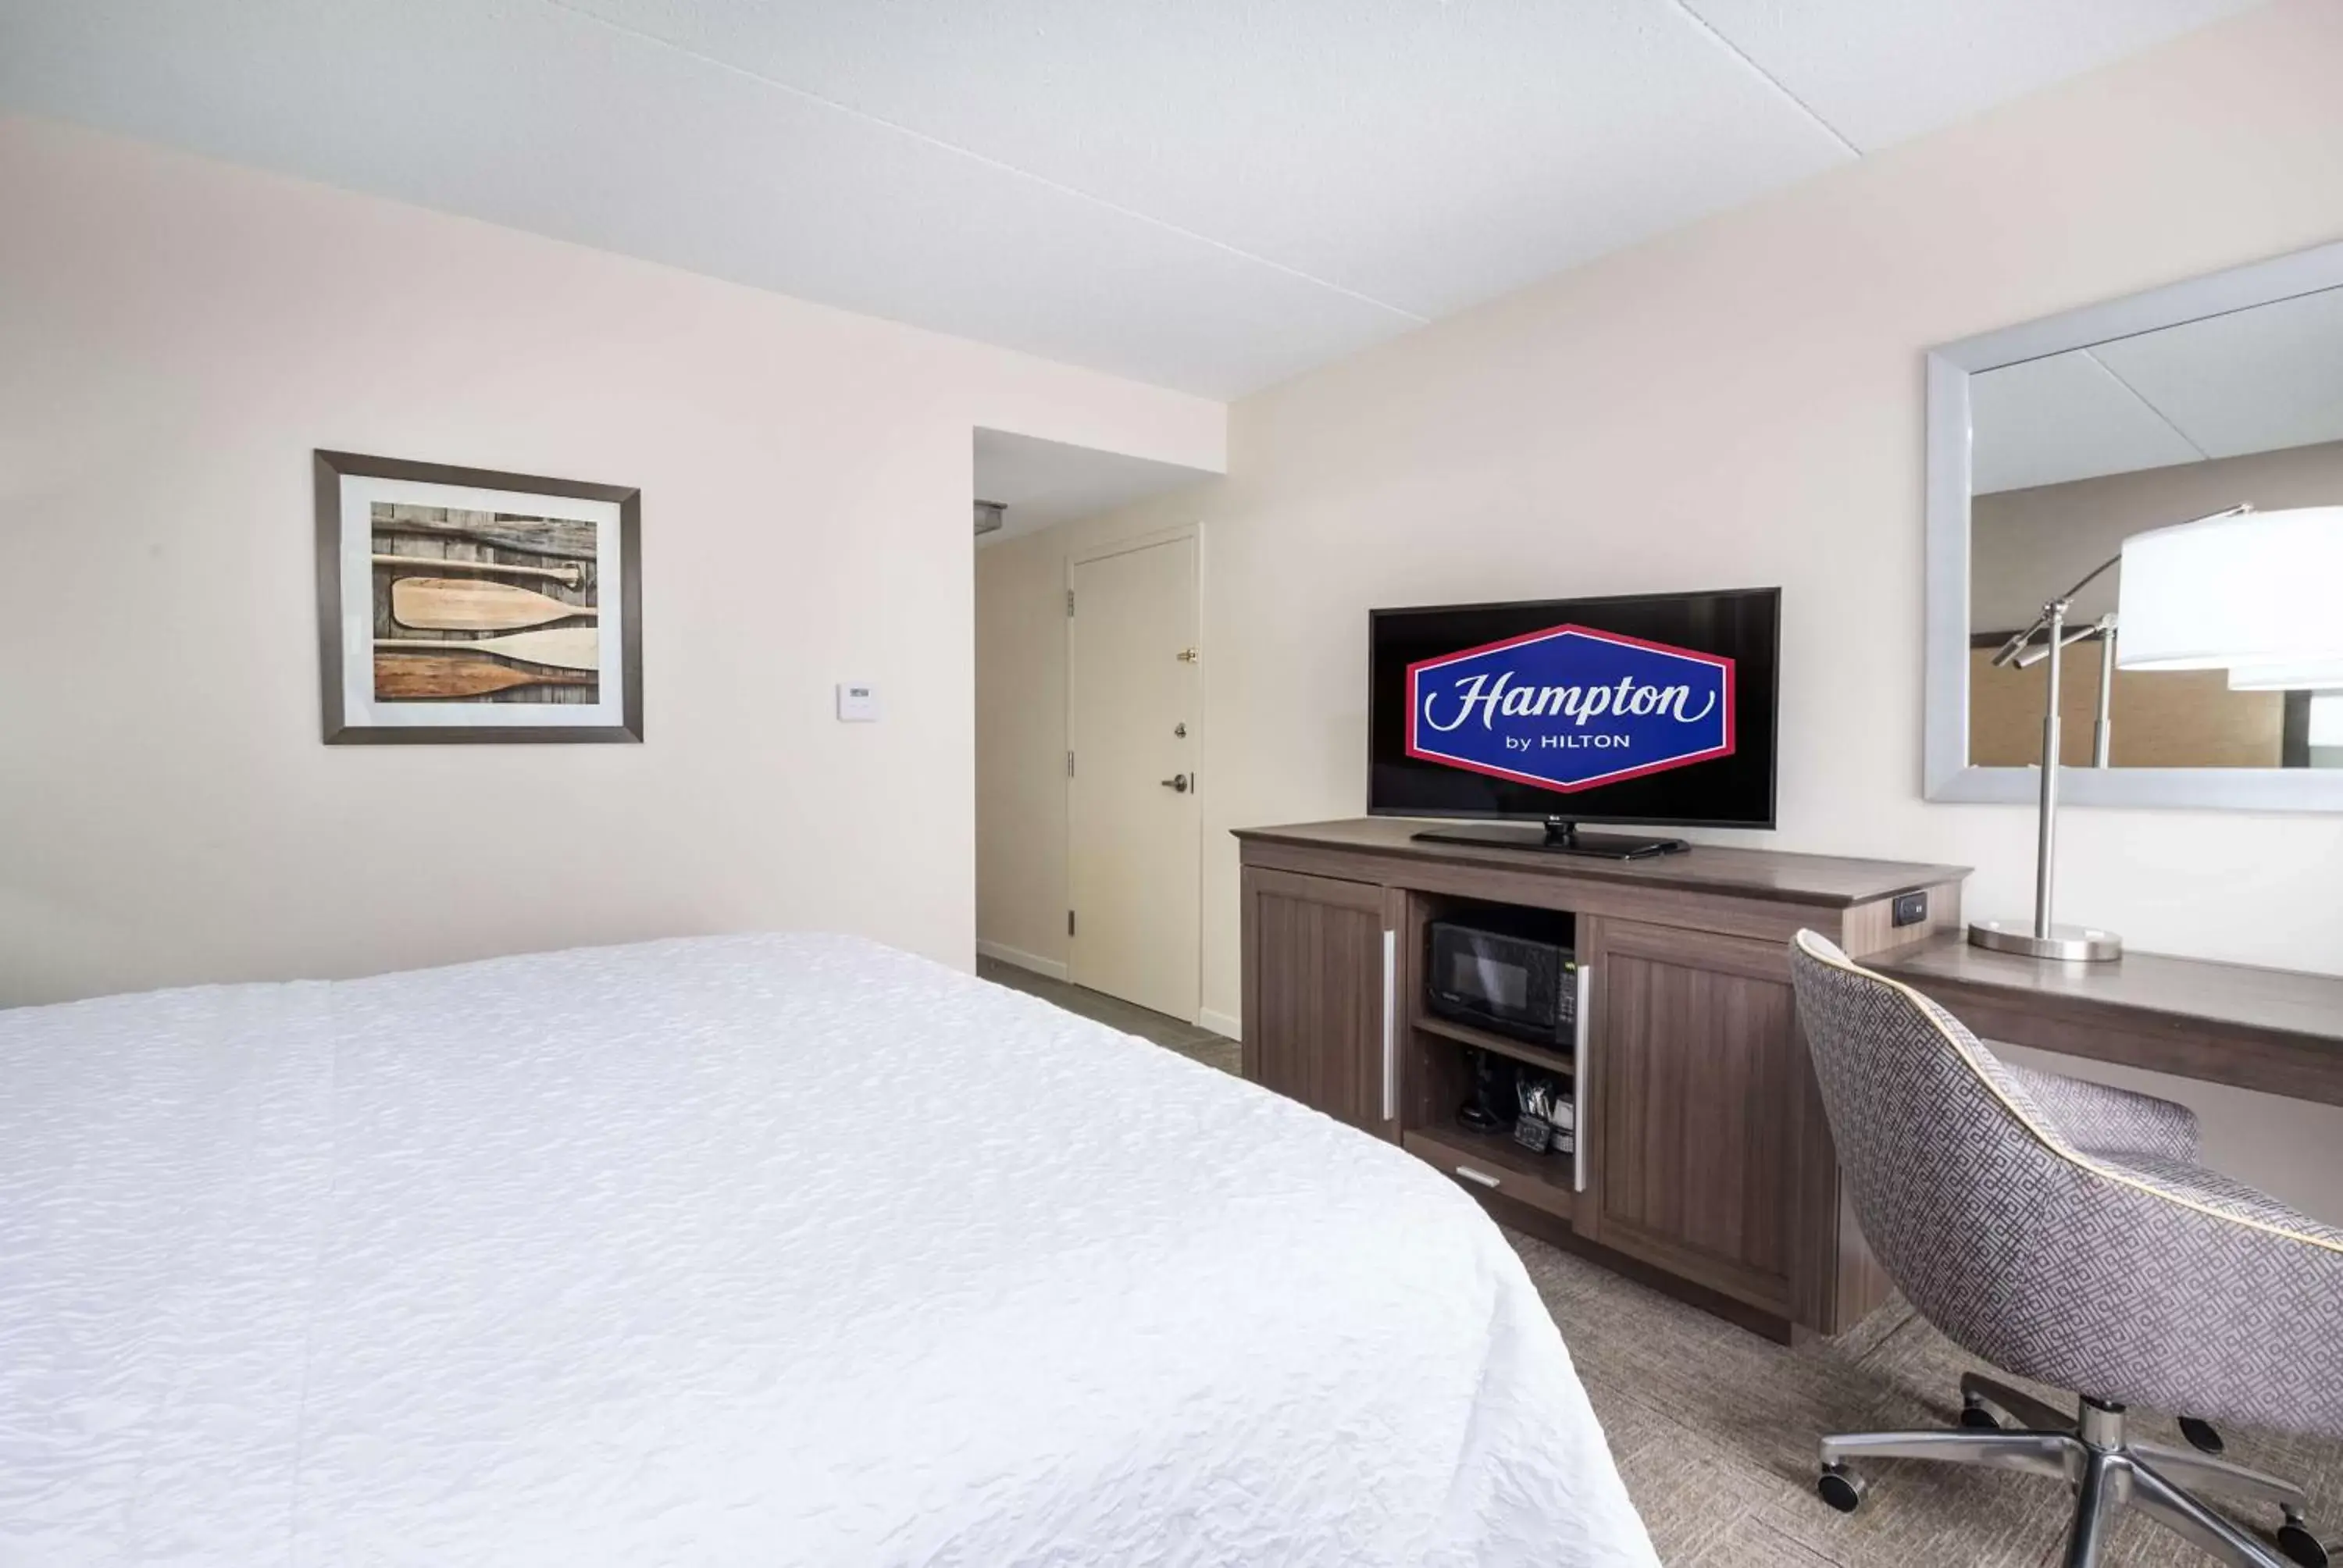 Bedroom, TV/Entertainment Center in Hampton Inn Freeport/Brunswick